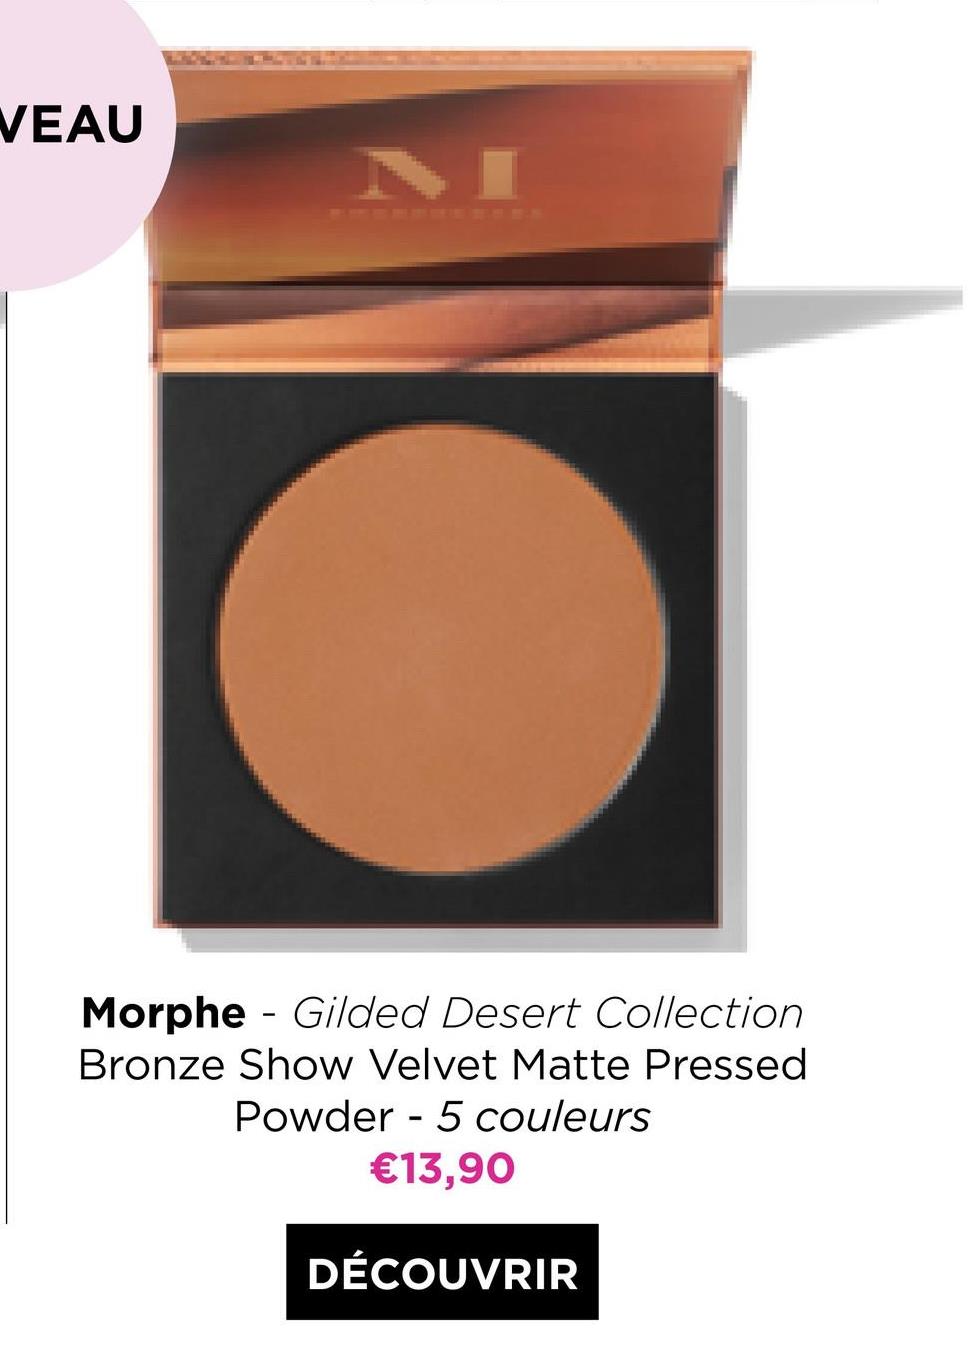 VEAU
-
Morphe - Gilded Desert Collection
Bronze Show Velvet Matte Pressed
Powder - 5 couleurs
€13,90
-
DÉCOUVRIR
